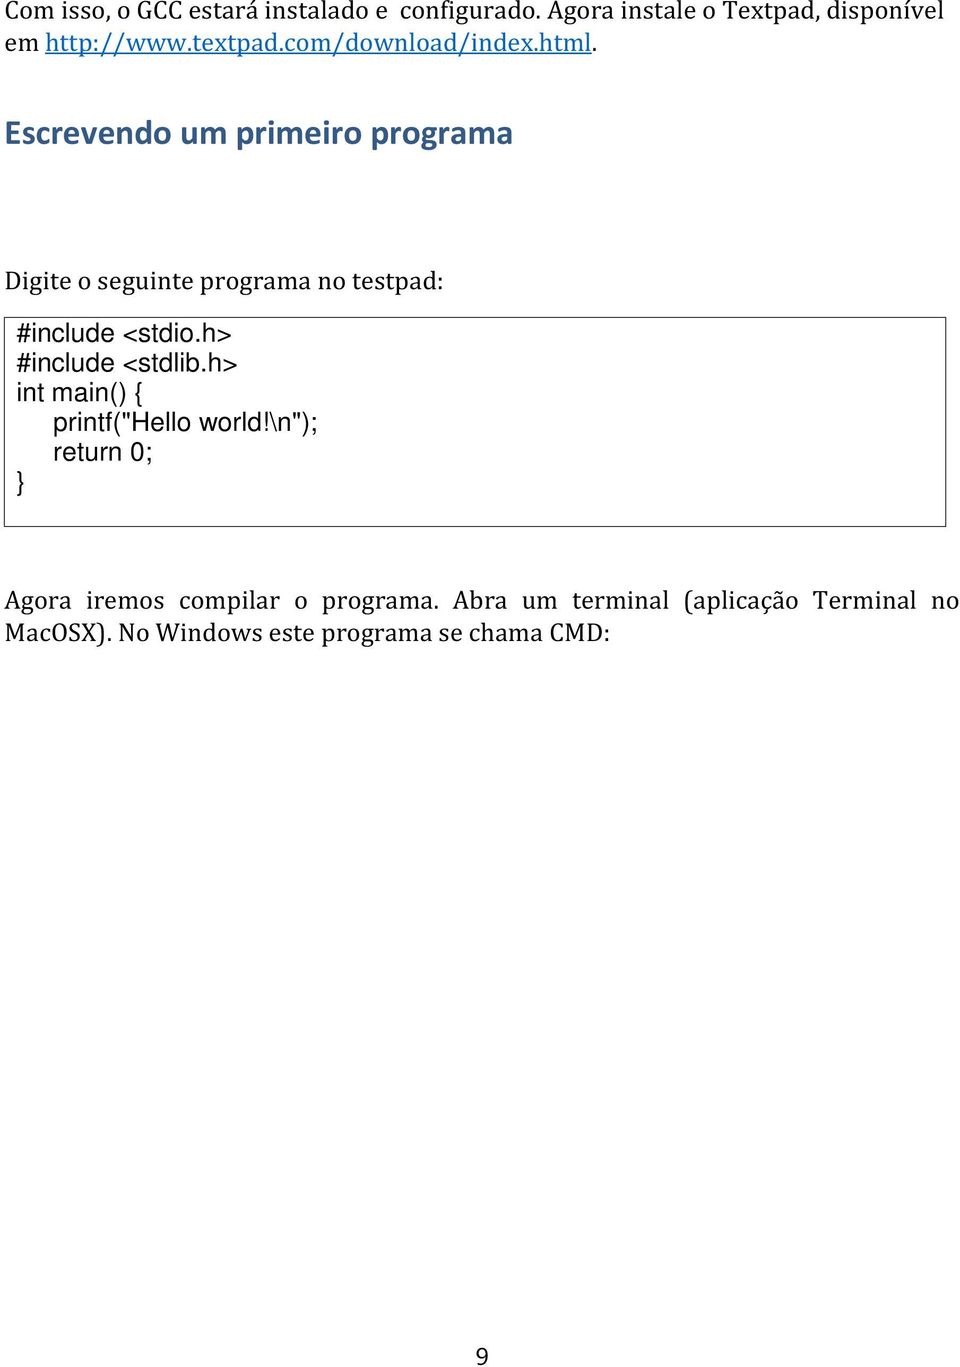 Escrevendo um primeiro programa Digite o seguinte programa no testpad: #include <stdio.